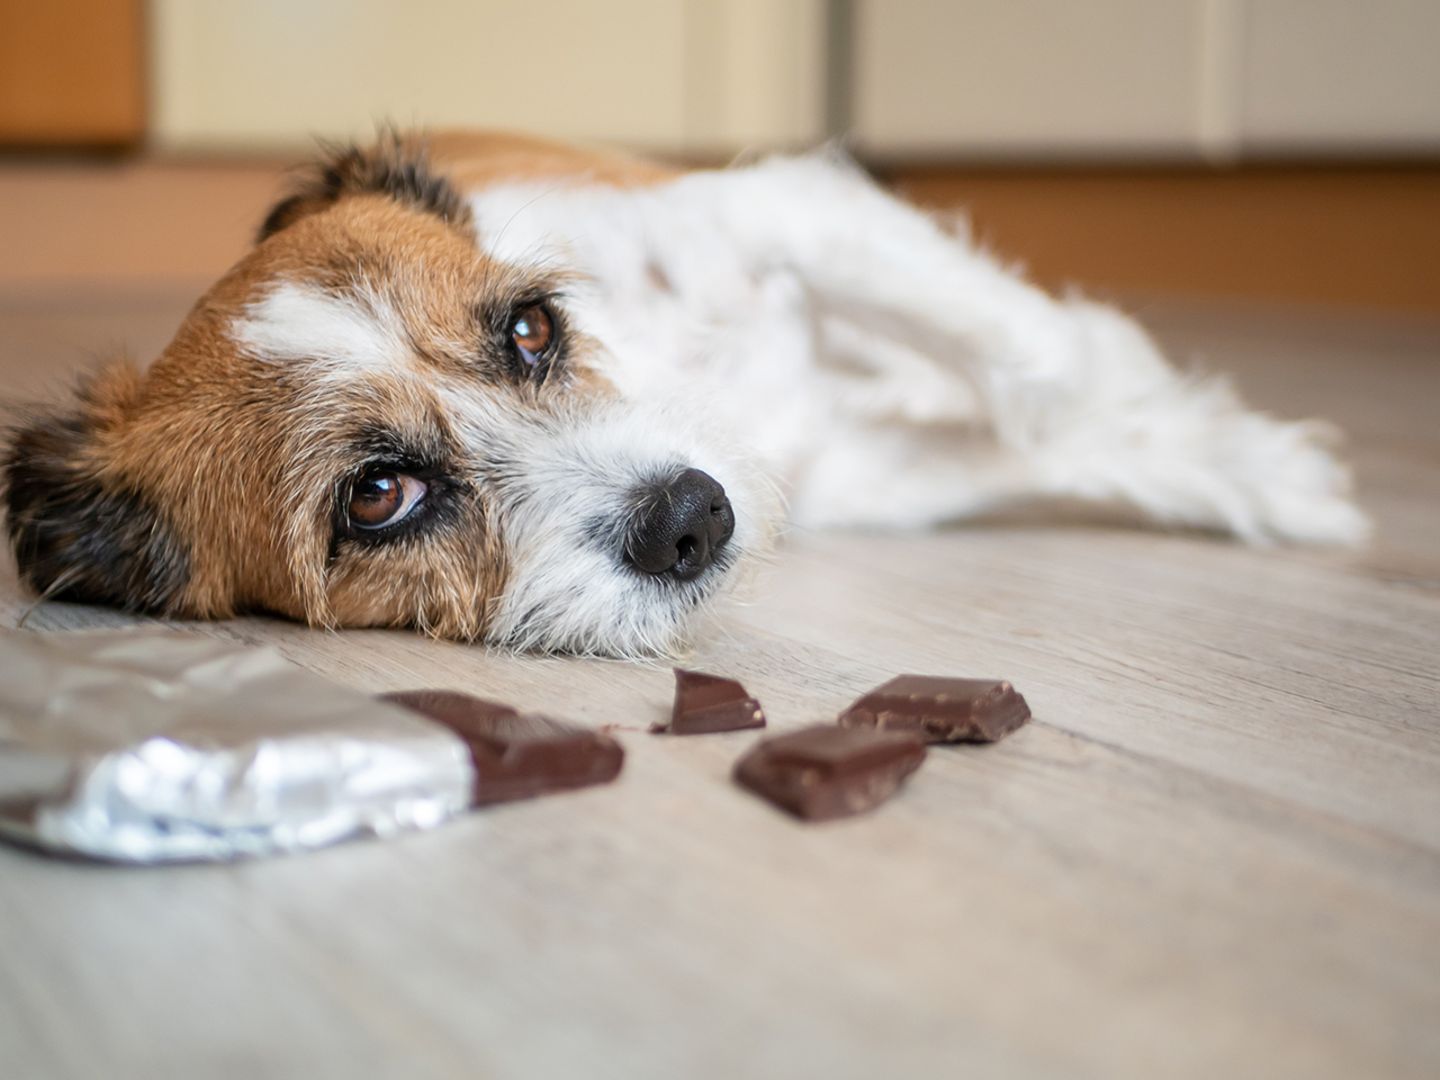 Hund mit Bauchschmerzen wegen Schokolade